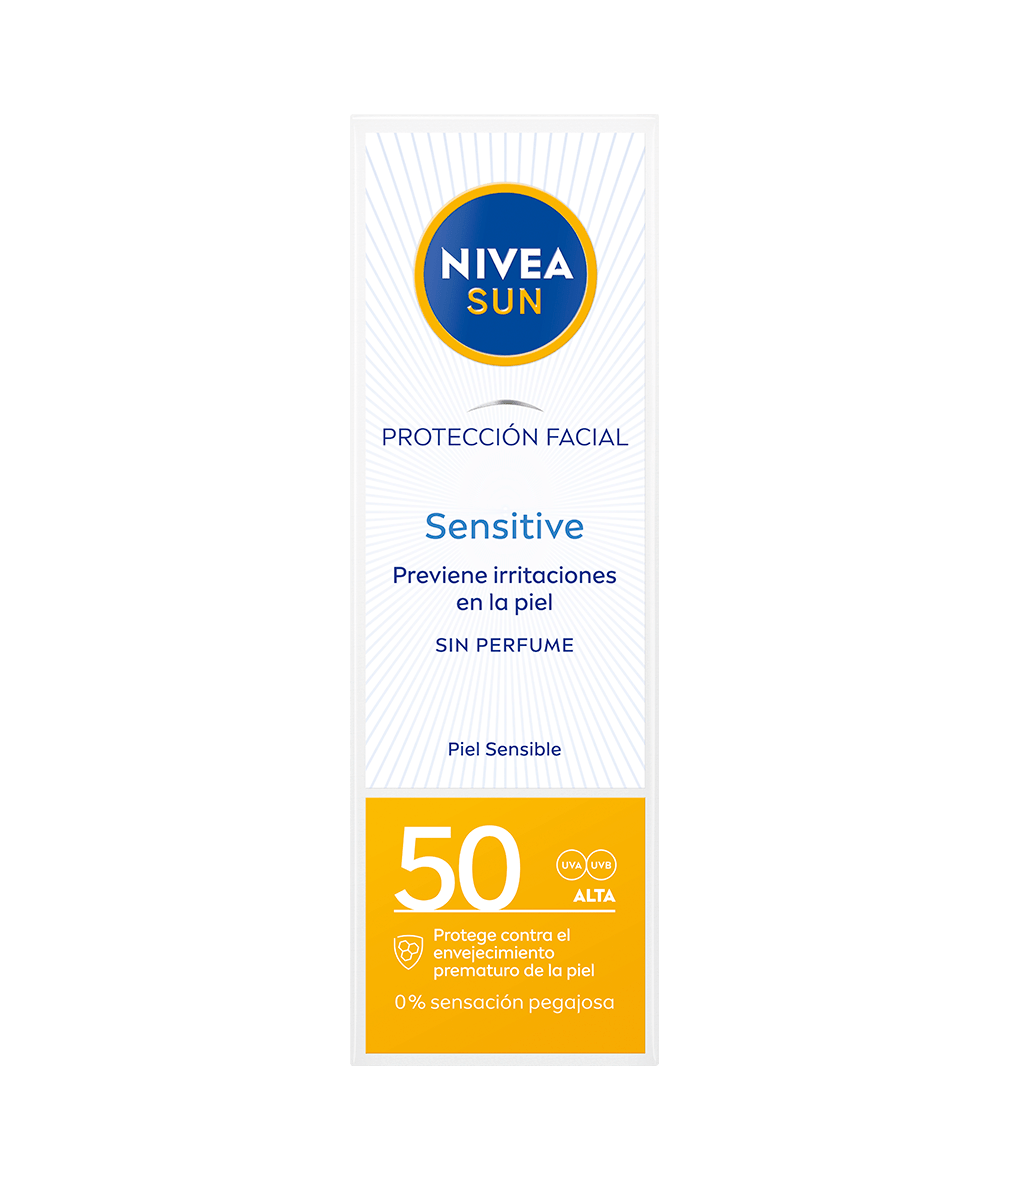 NIVEA SUN Protección Facial Sensitive FP 50